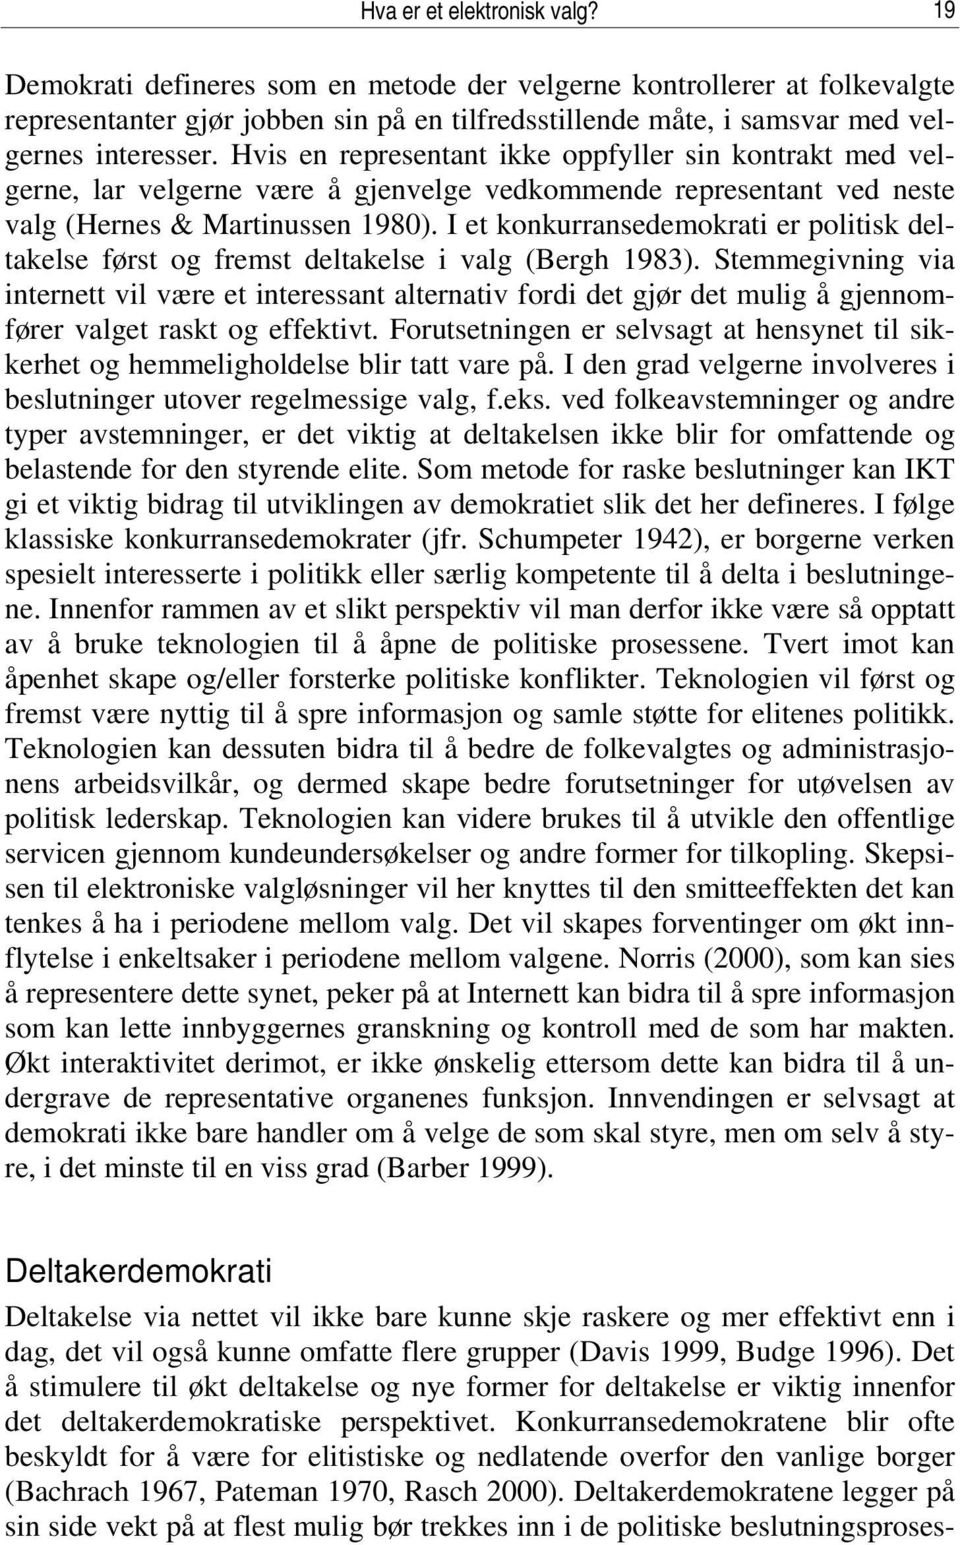 Hvis en representant ikke oppfyller sin kontrakt med velgerne, lar velgerne være å gjenvelge vedkommende representant ved neste valg (Hernes & Martinussen 1980).